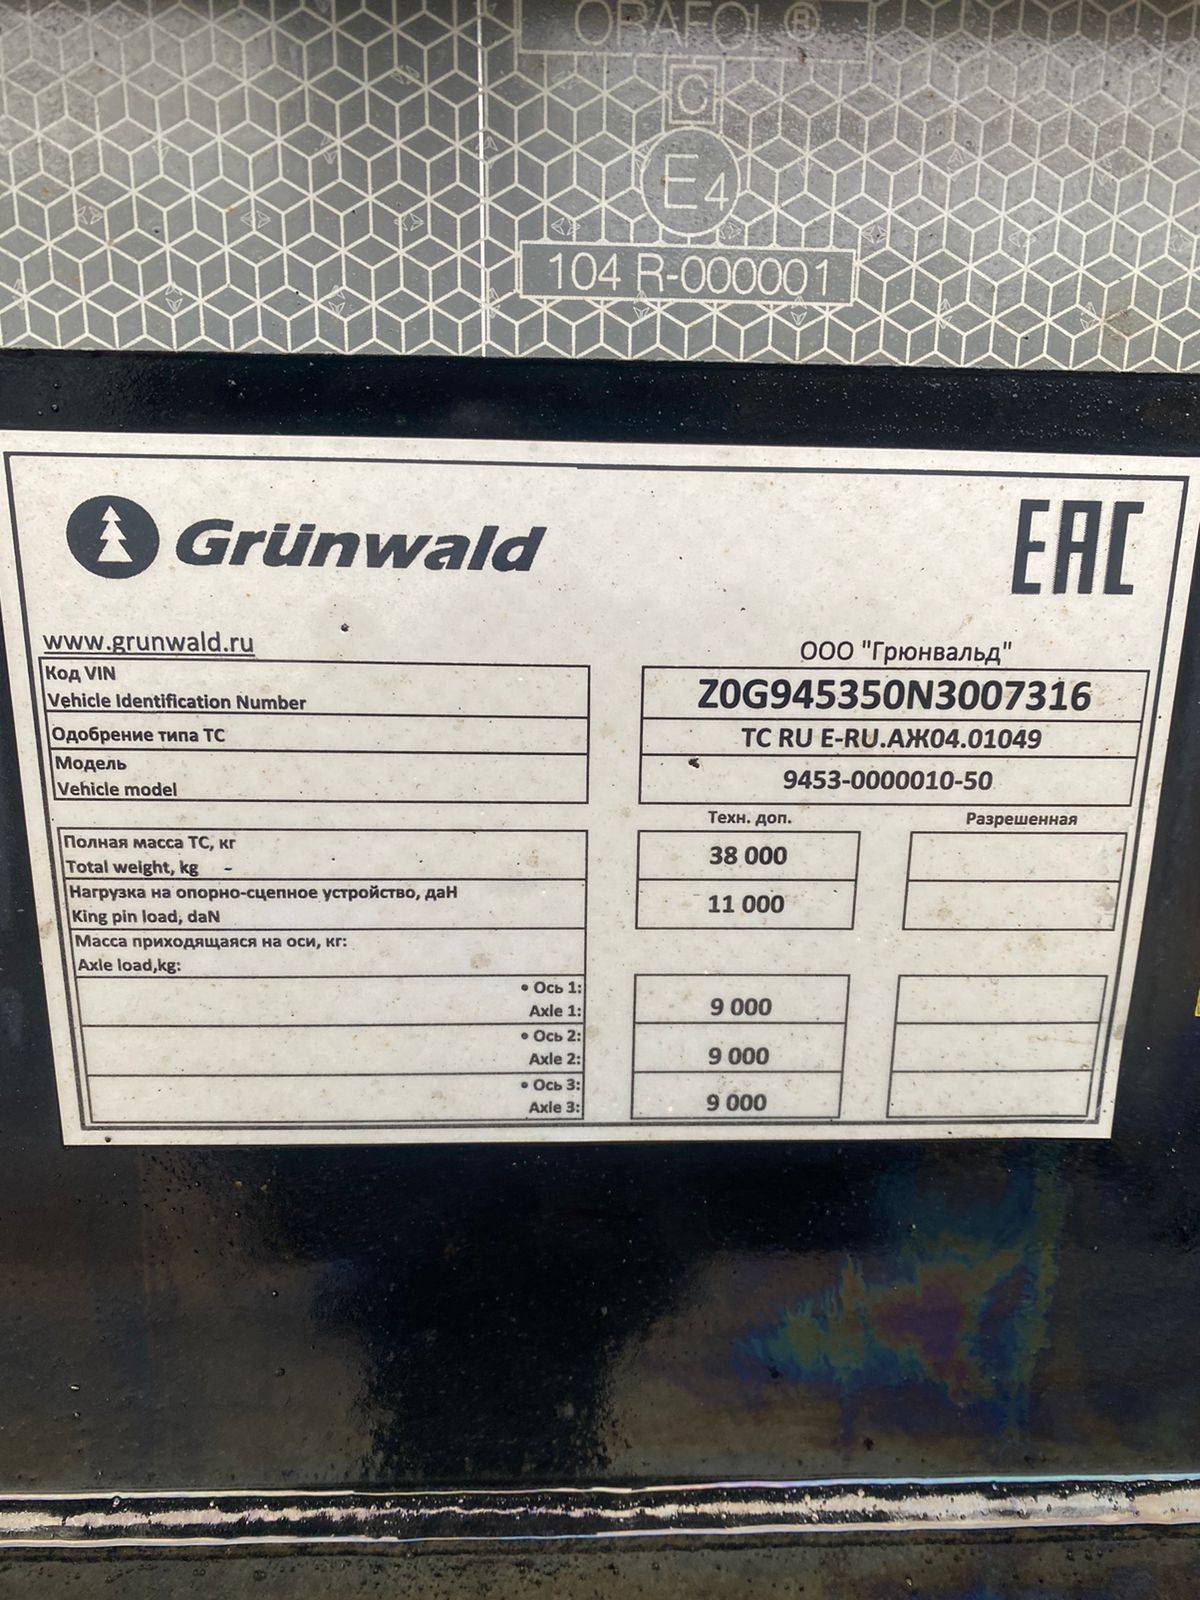 Grunwald Самосвальный TSt 31 (9453-0000010-50) Лот 000001304